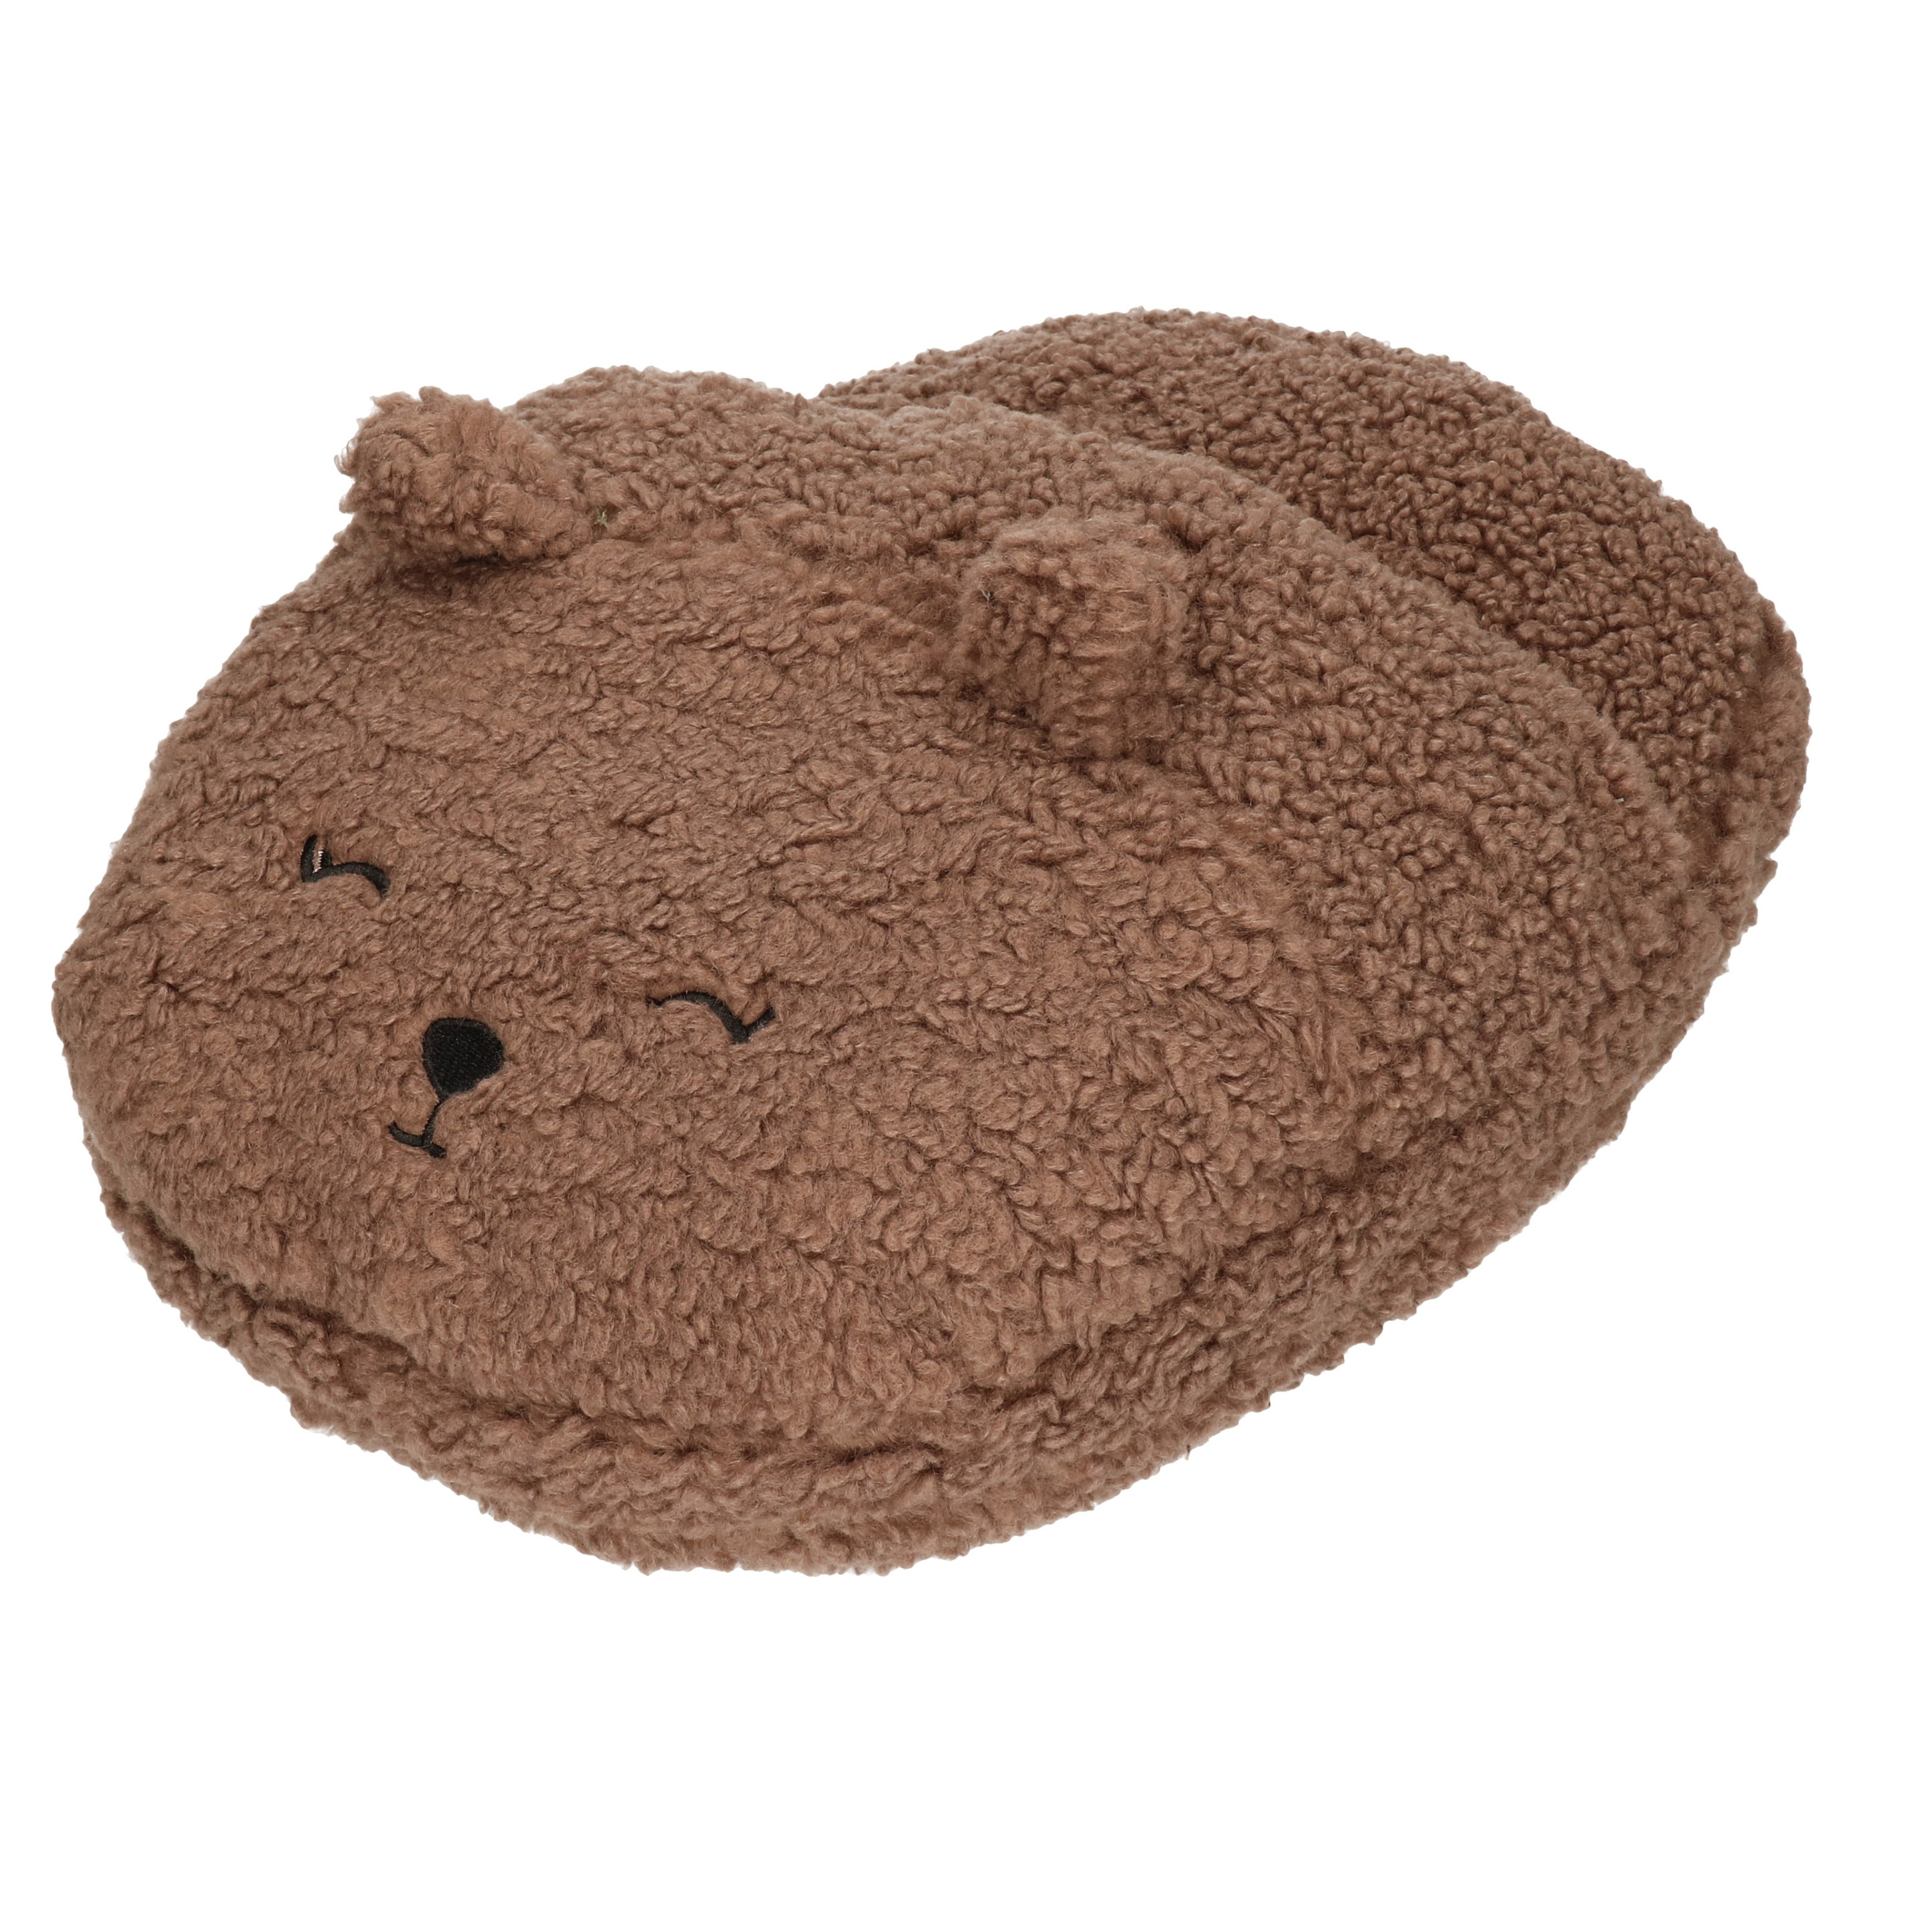 Grote voetenwarmer pantoffel-slof beer chocolade bruin one size 30 x 27 cm